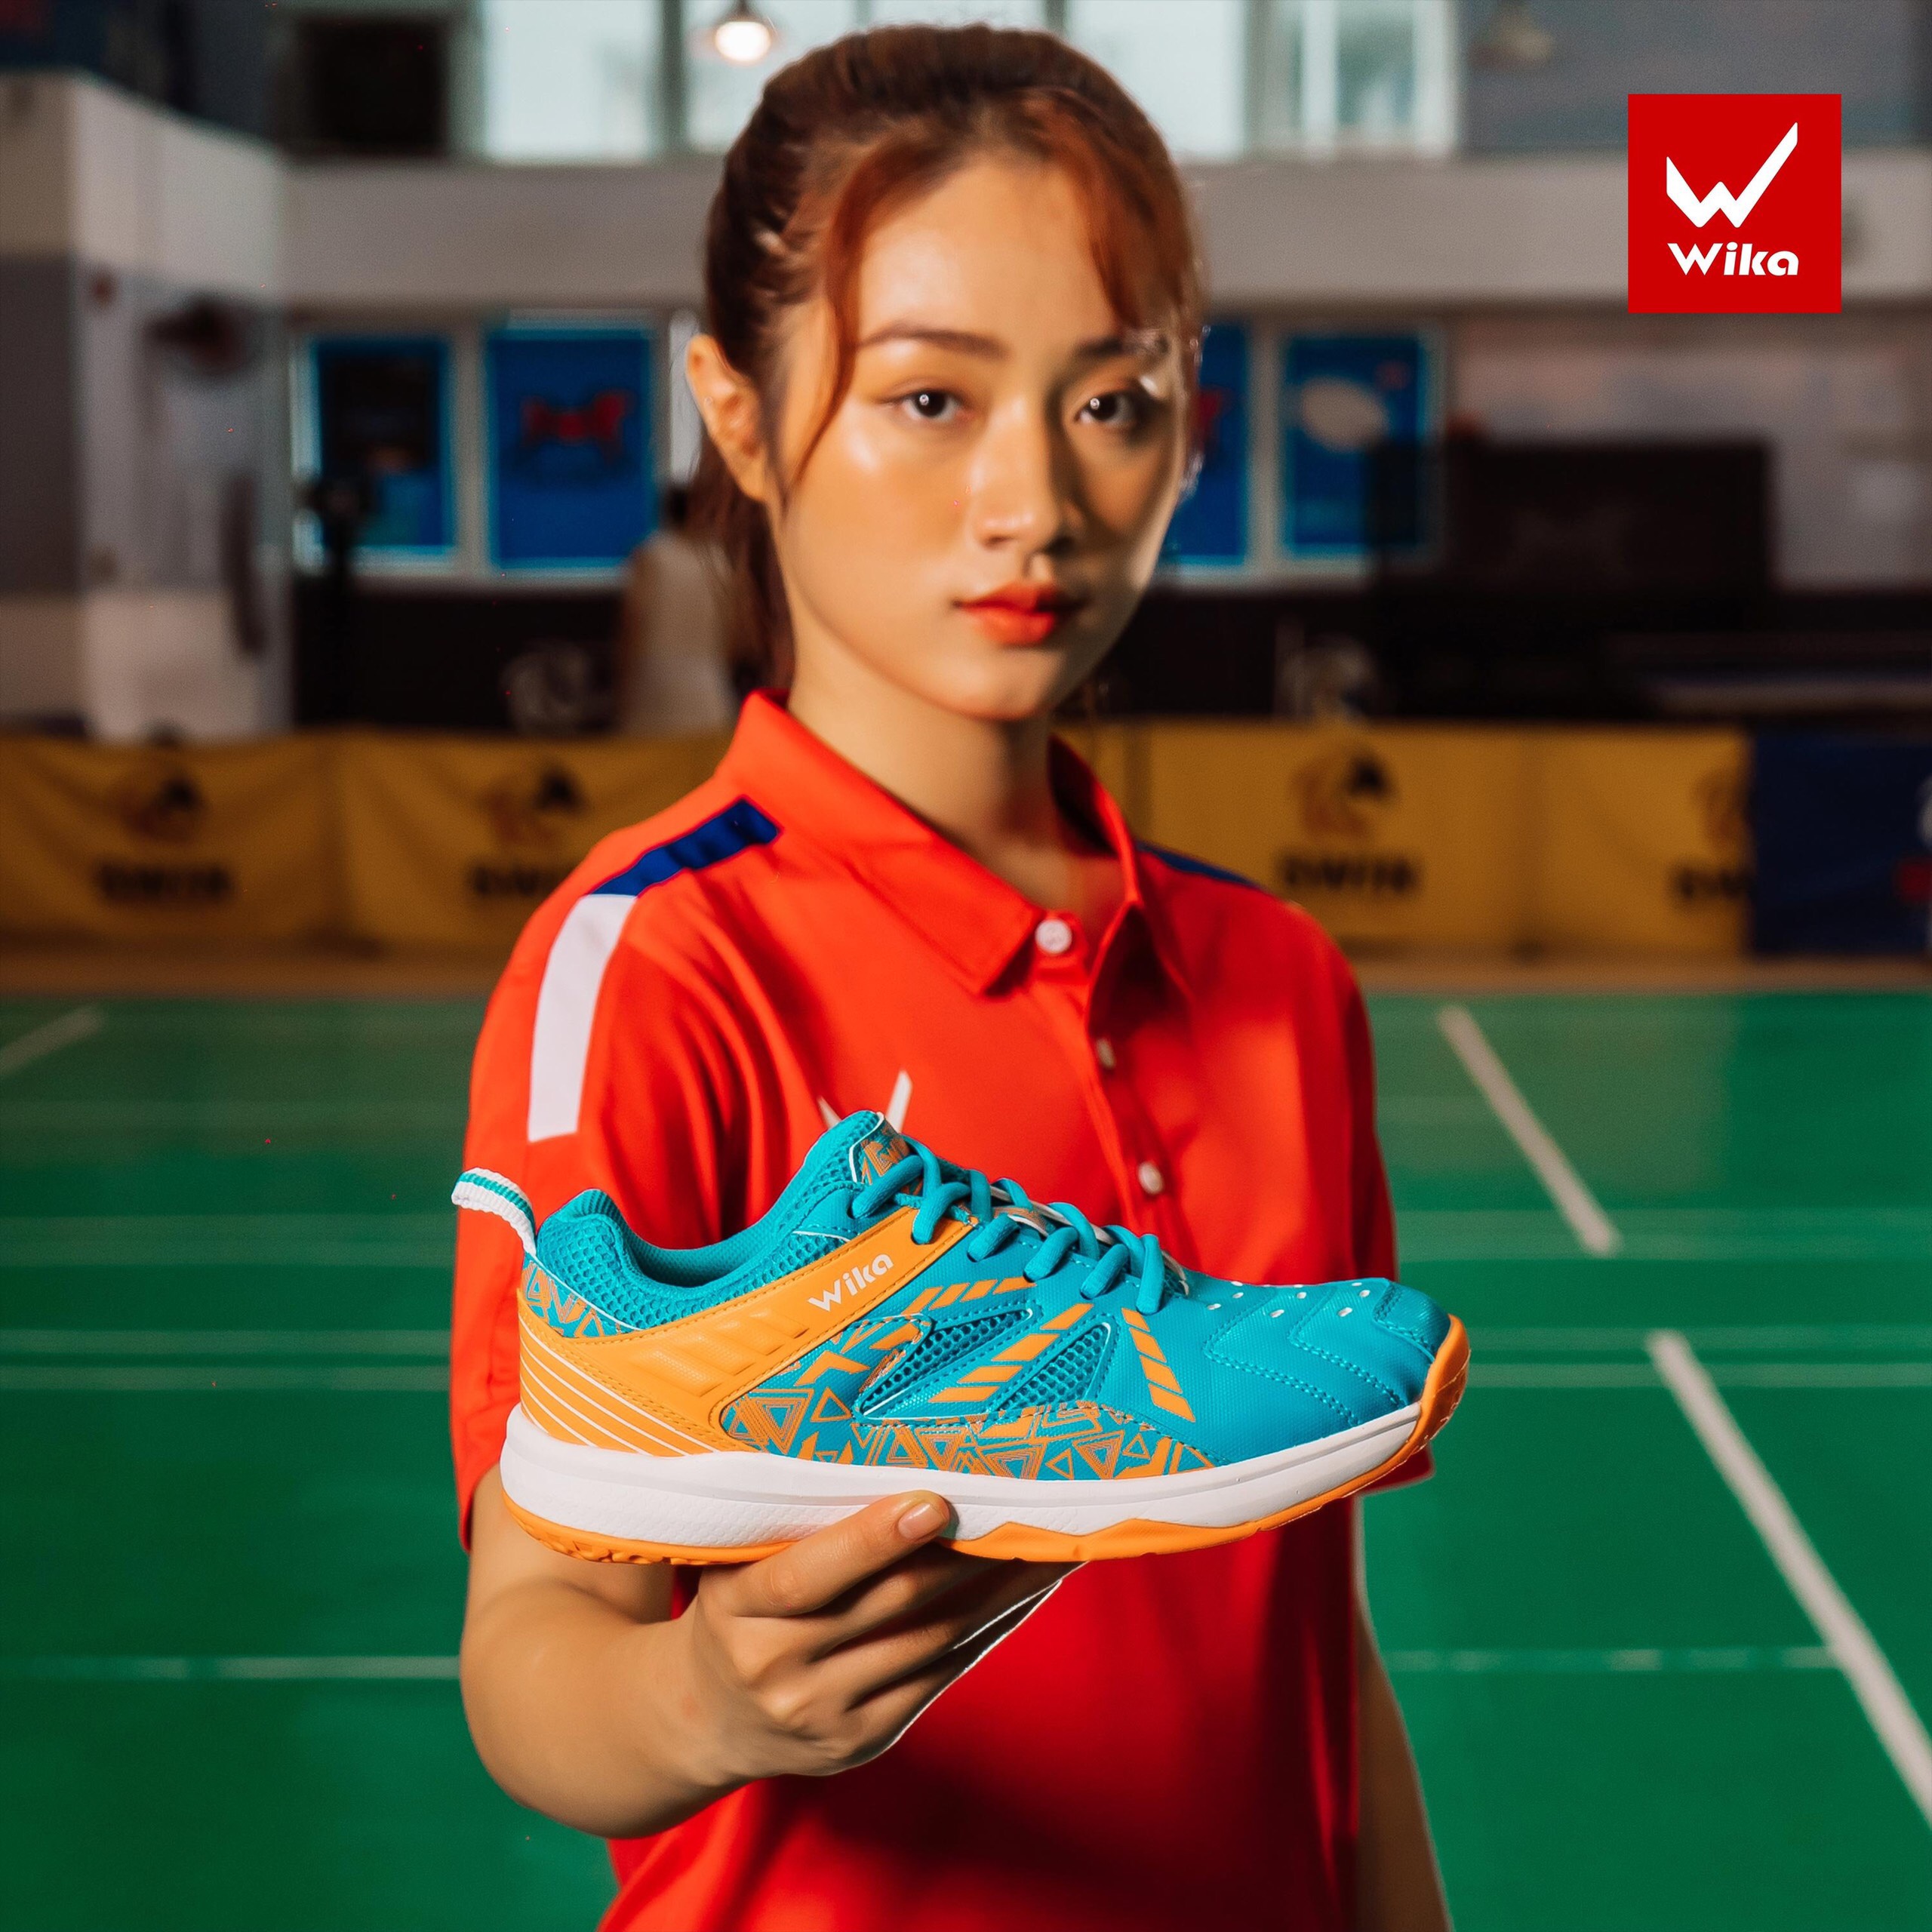 Giày Wi-Ka, giày cầu lông, bóng chuyền Wi-ka nam - nữ màu Xanh Cam - Hàng công ty (size 37-44)